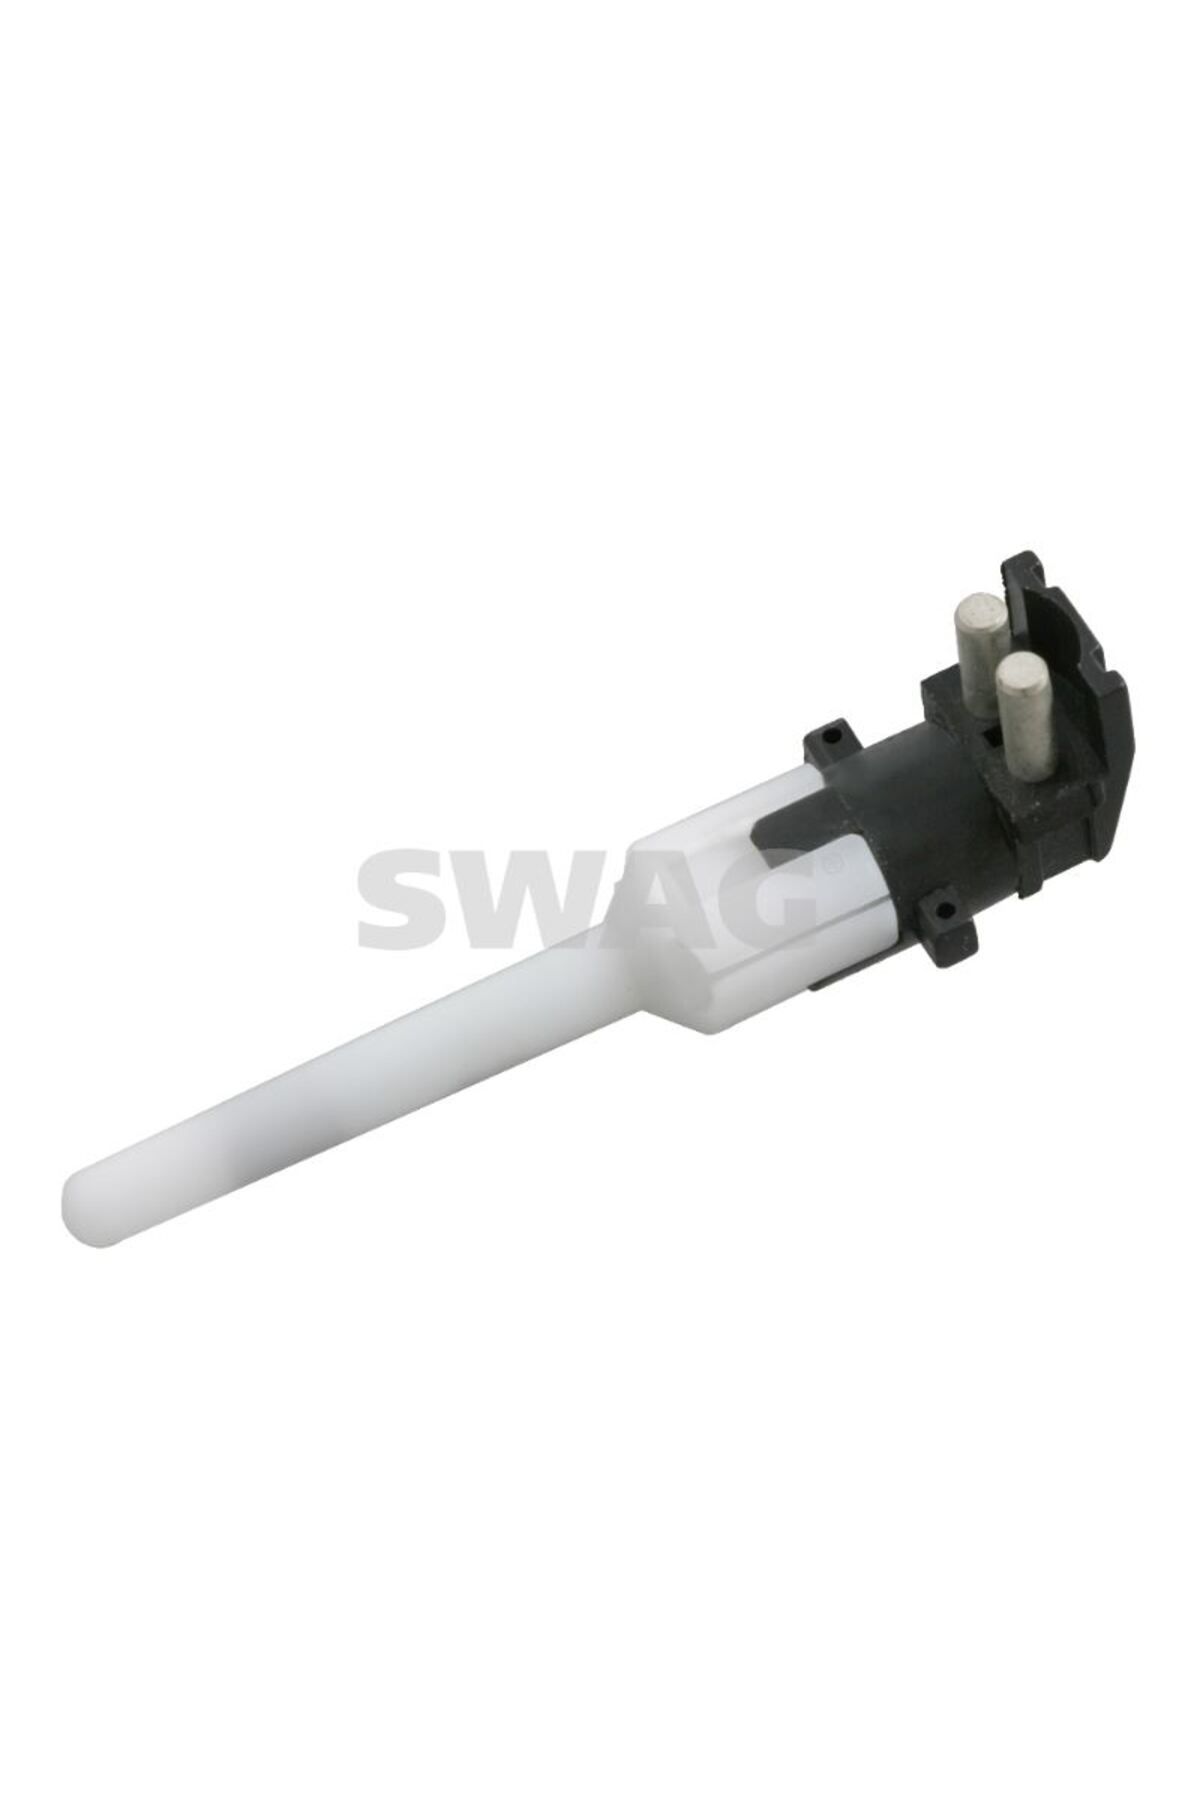 Swag Sensör Soğutma Sıvısı Göstergesi Ve Motor Kumanda Cihazı Için Febı 24053swg-10924053 1295450224